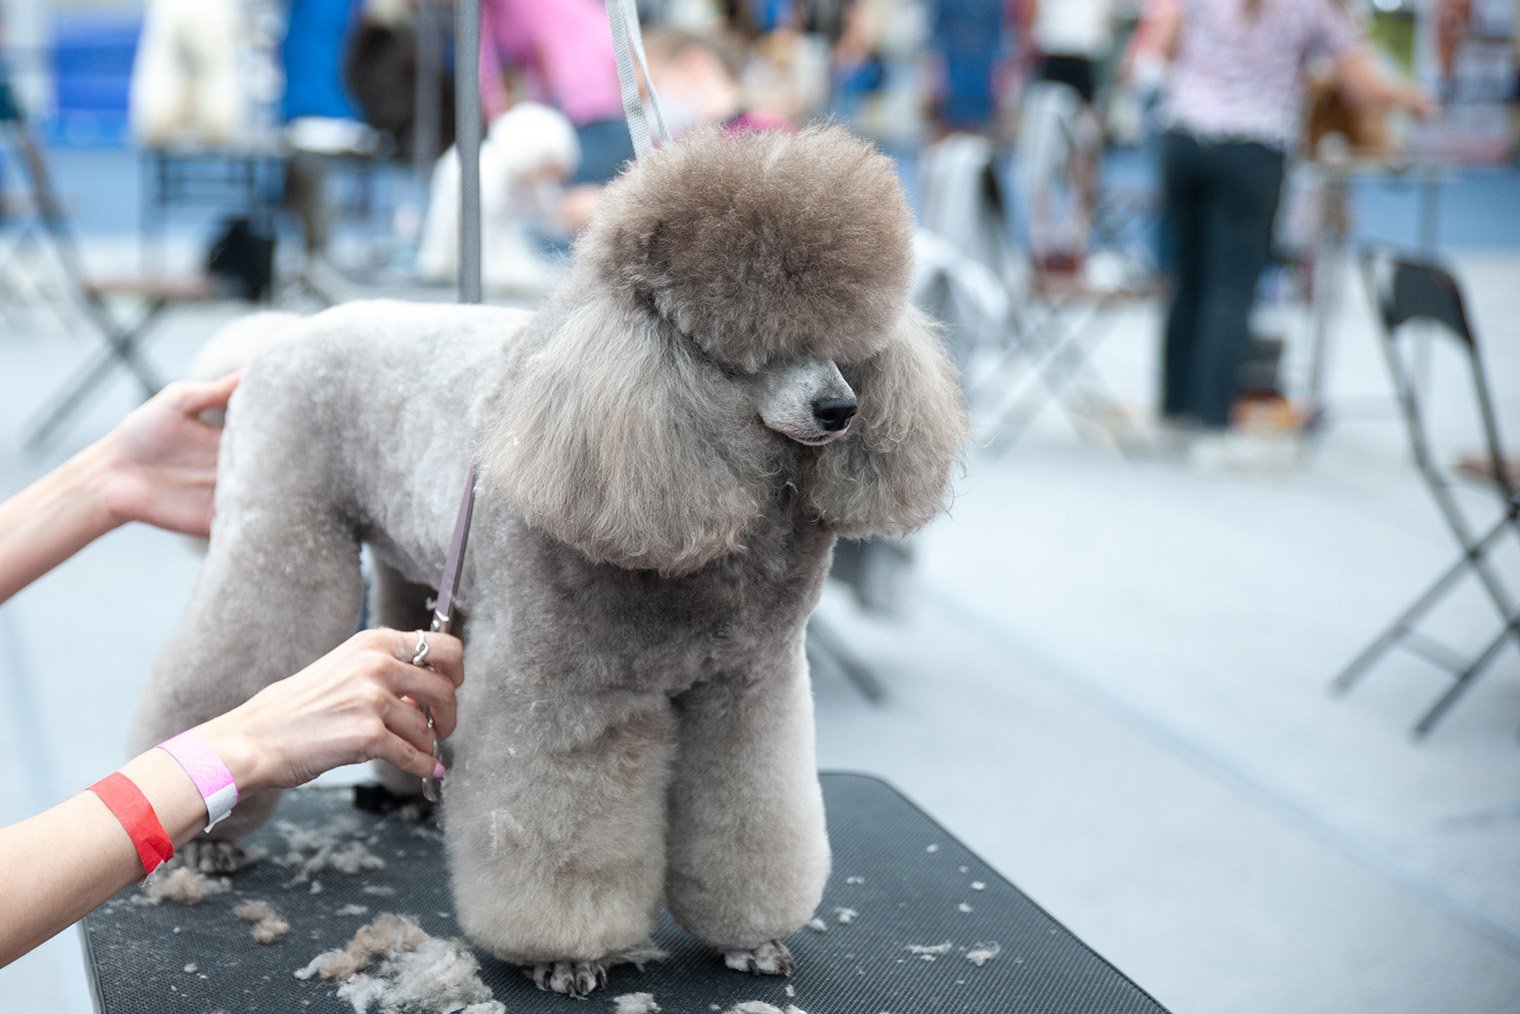 В период линьки шерсть пуделя сбивается в колтуны, поэтому собаку вычесывают регулярно. Фотография: WildStrawberry / FOTODOMShutterstock / Shutterstock